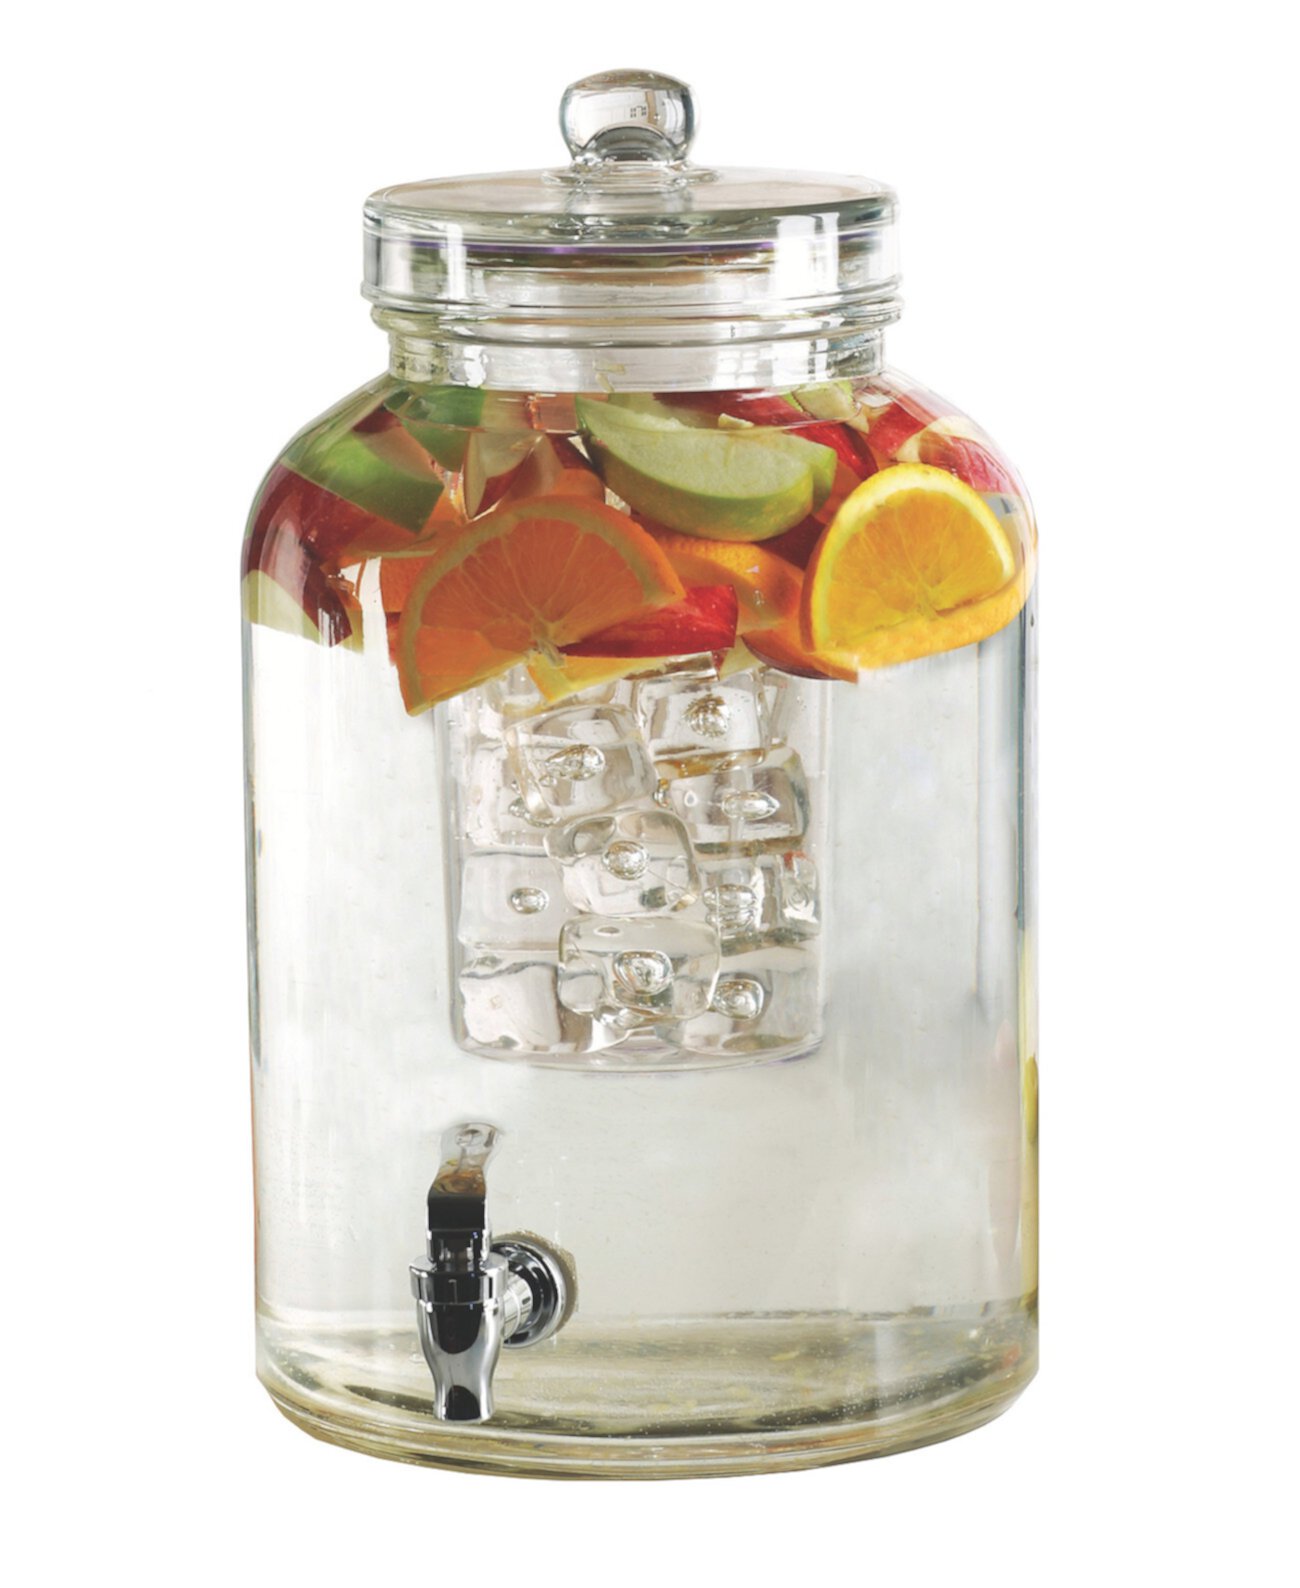 Диспенсер для напитков Brington со вставкой для льда и устройством для заваривания фруктов, 2,6 галлона Circle Glass